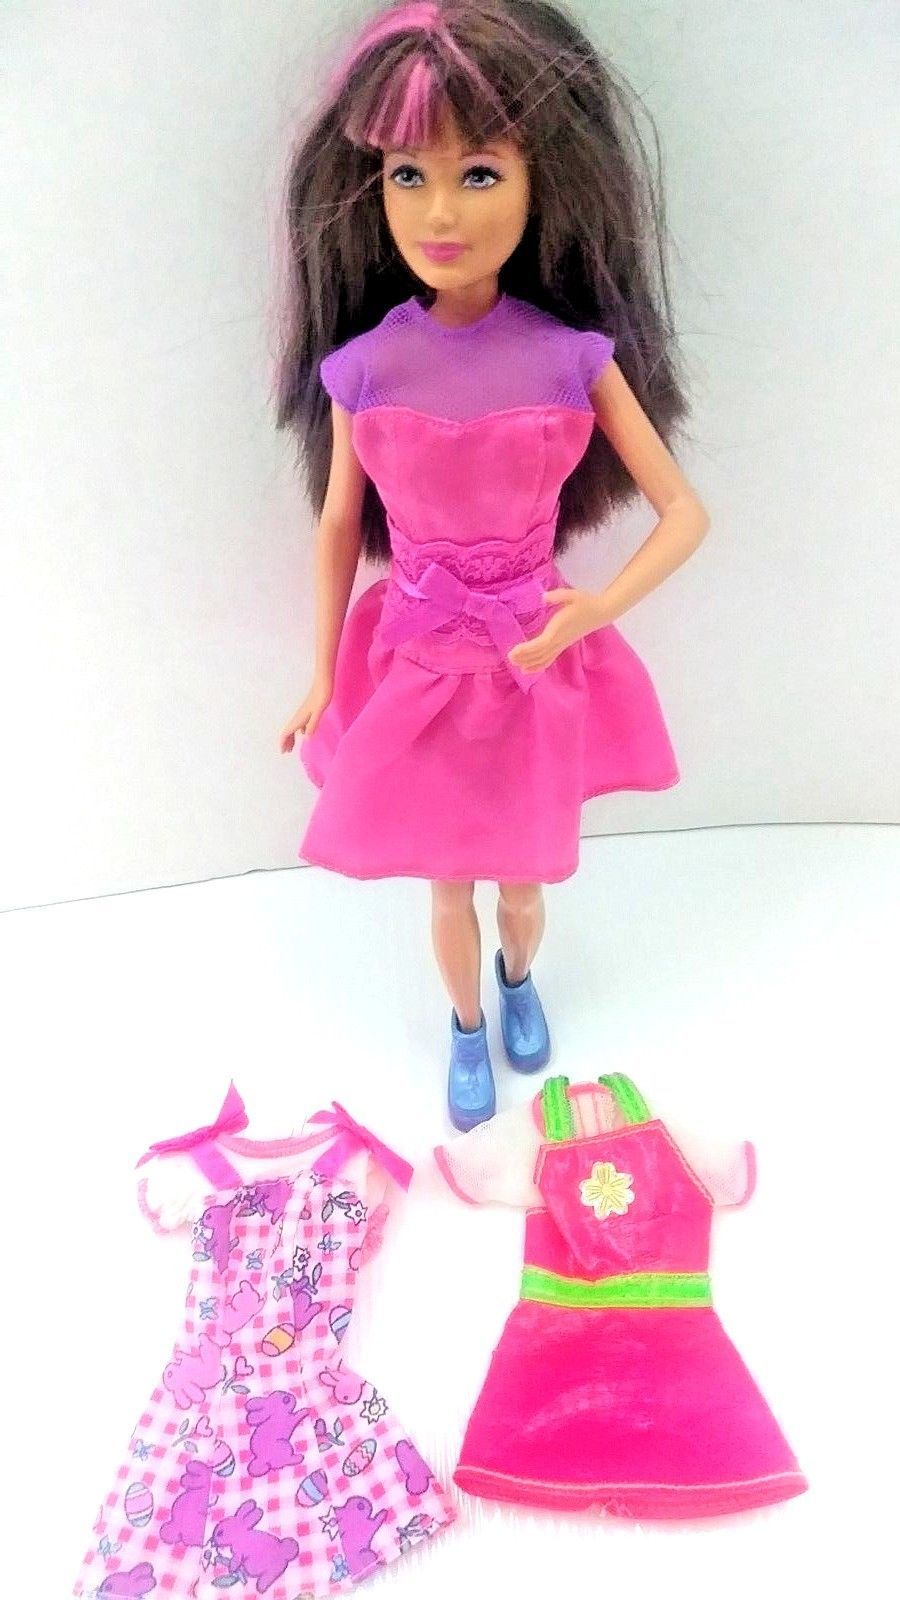 barbie with pink streak in hair